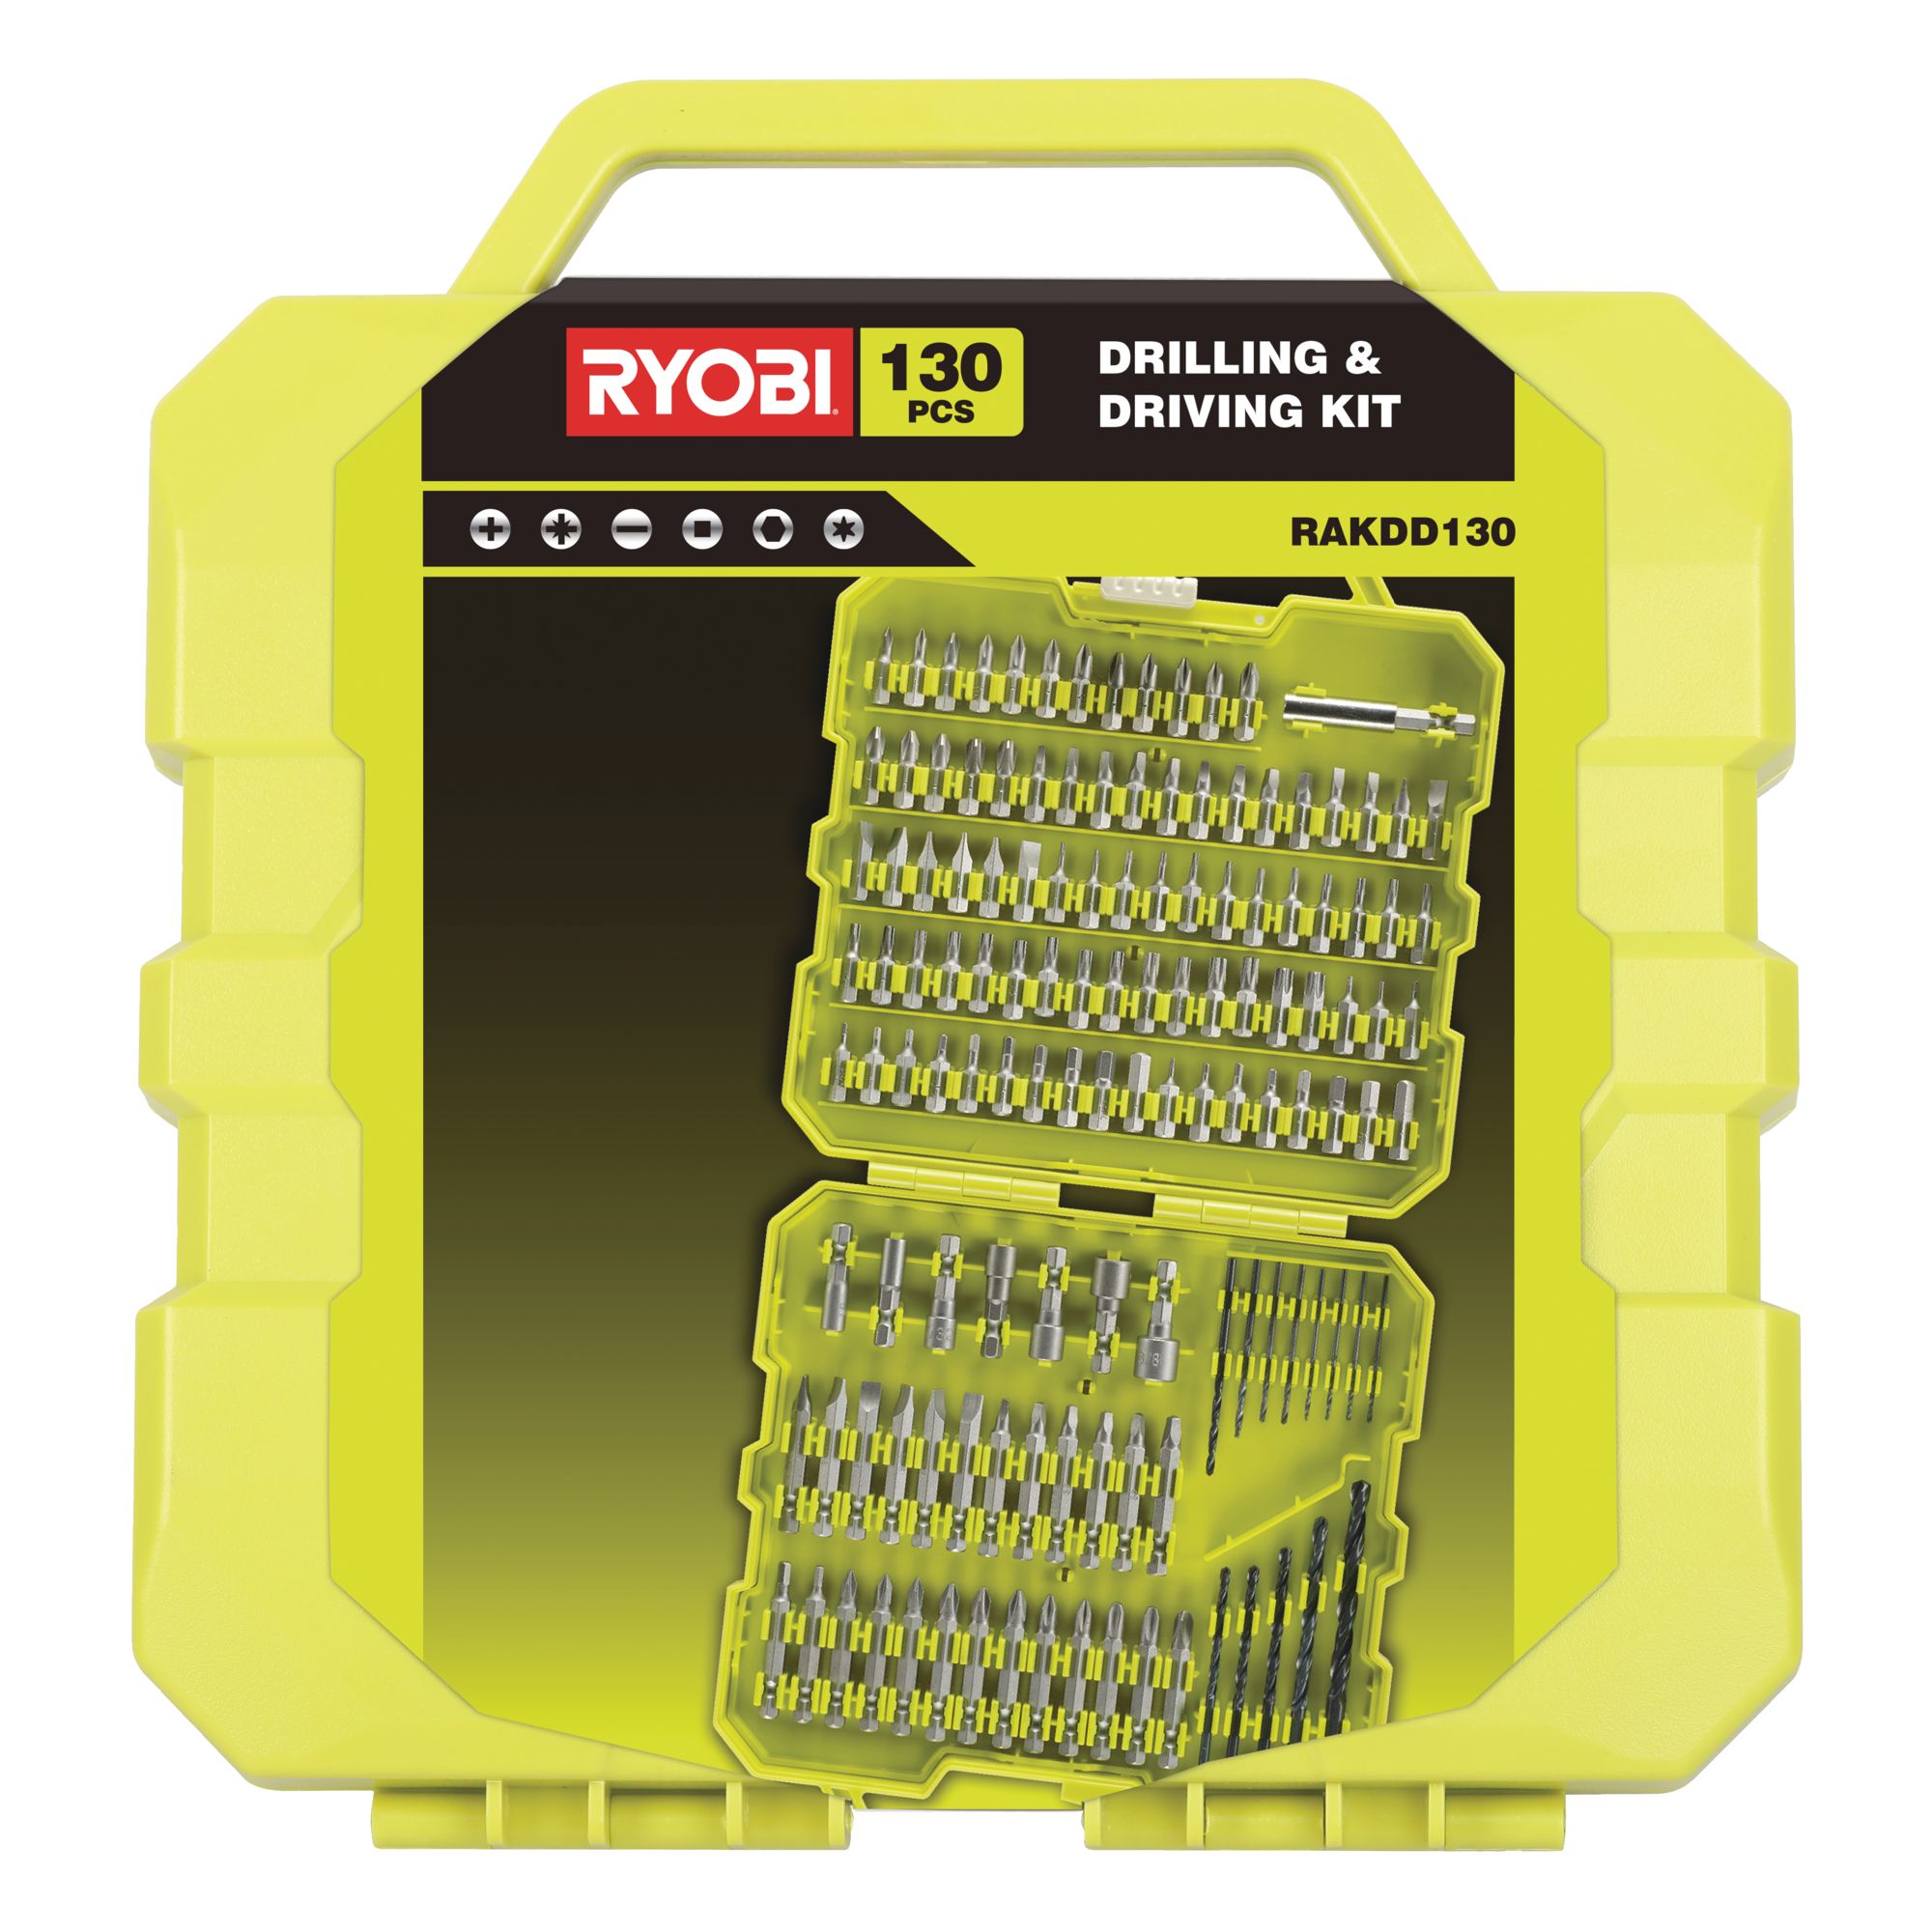 Ryobi 130 piece Straight Mixed Drill bit set - RAKDD130B